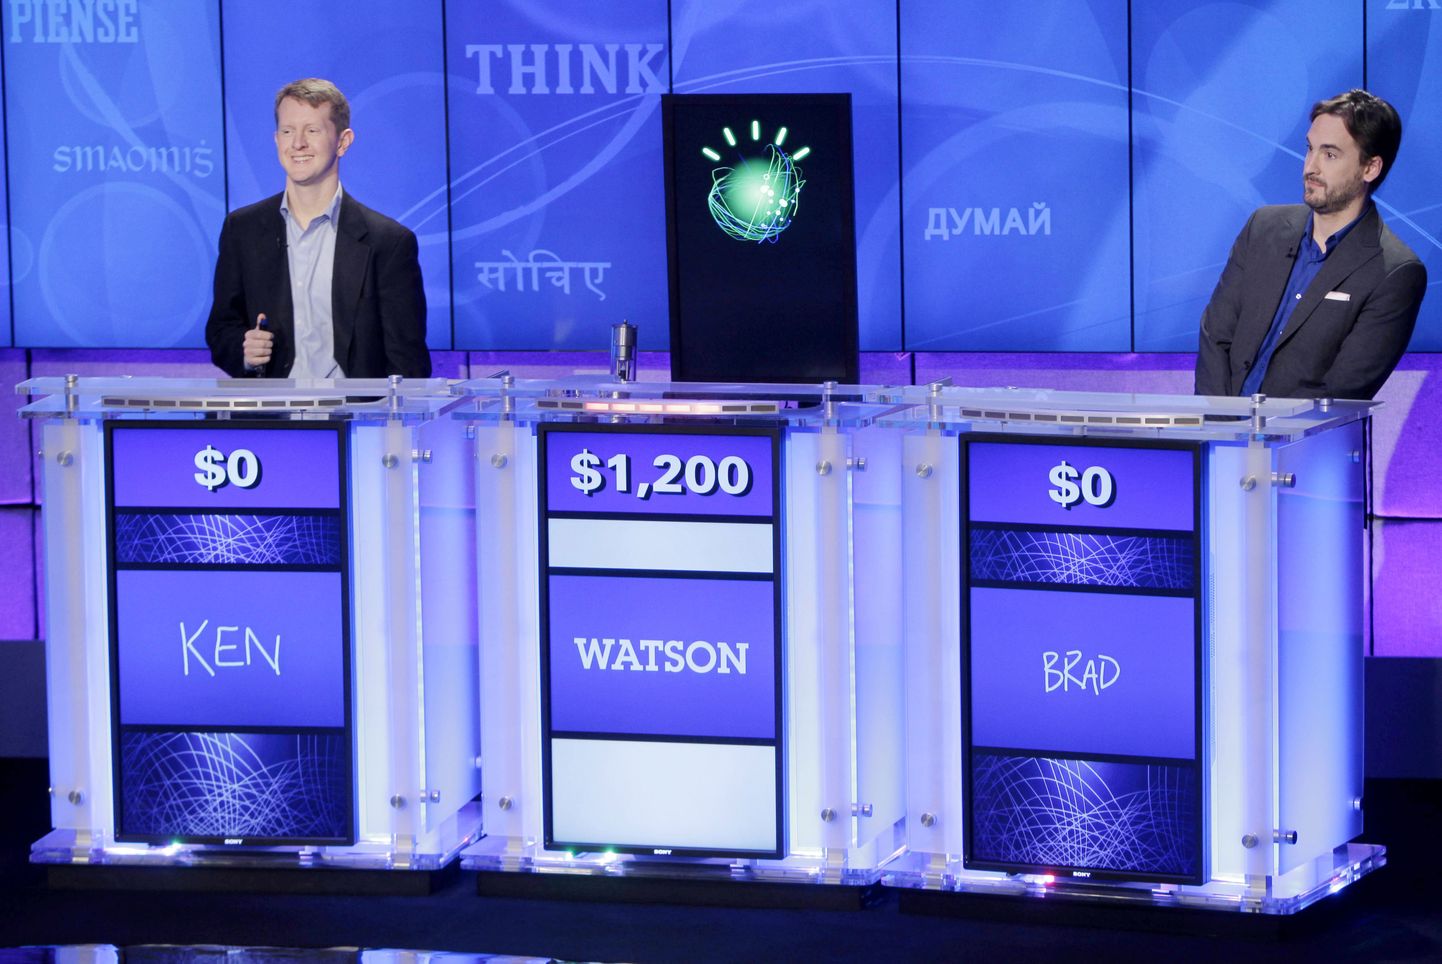 IBMi kognitiivselt mõtlev superarvuti Watson 2011. aastal USA Kuldvillaku (Jeopardy) saates.